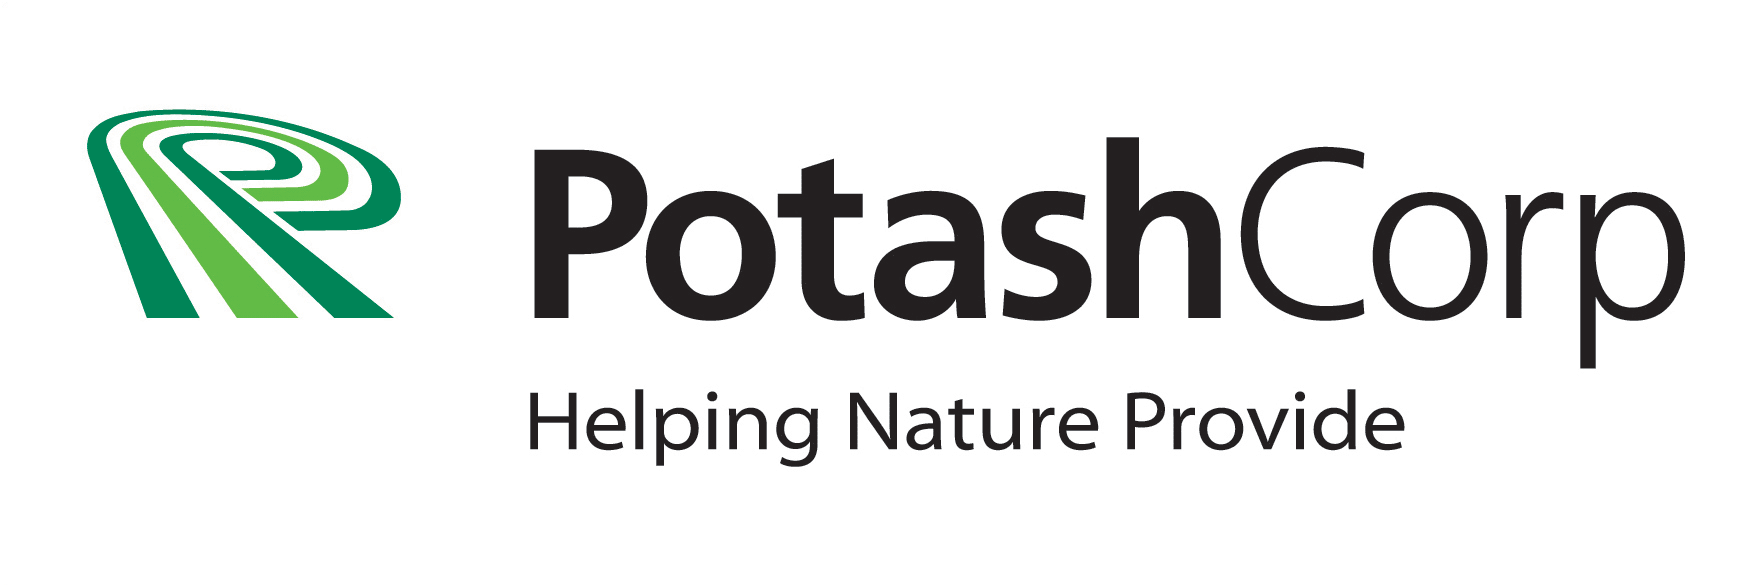 potashCorp-FINAL